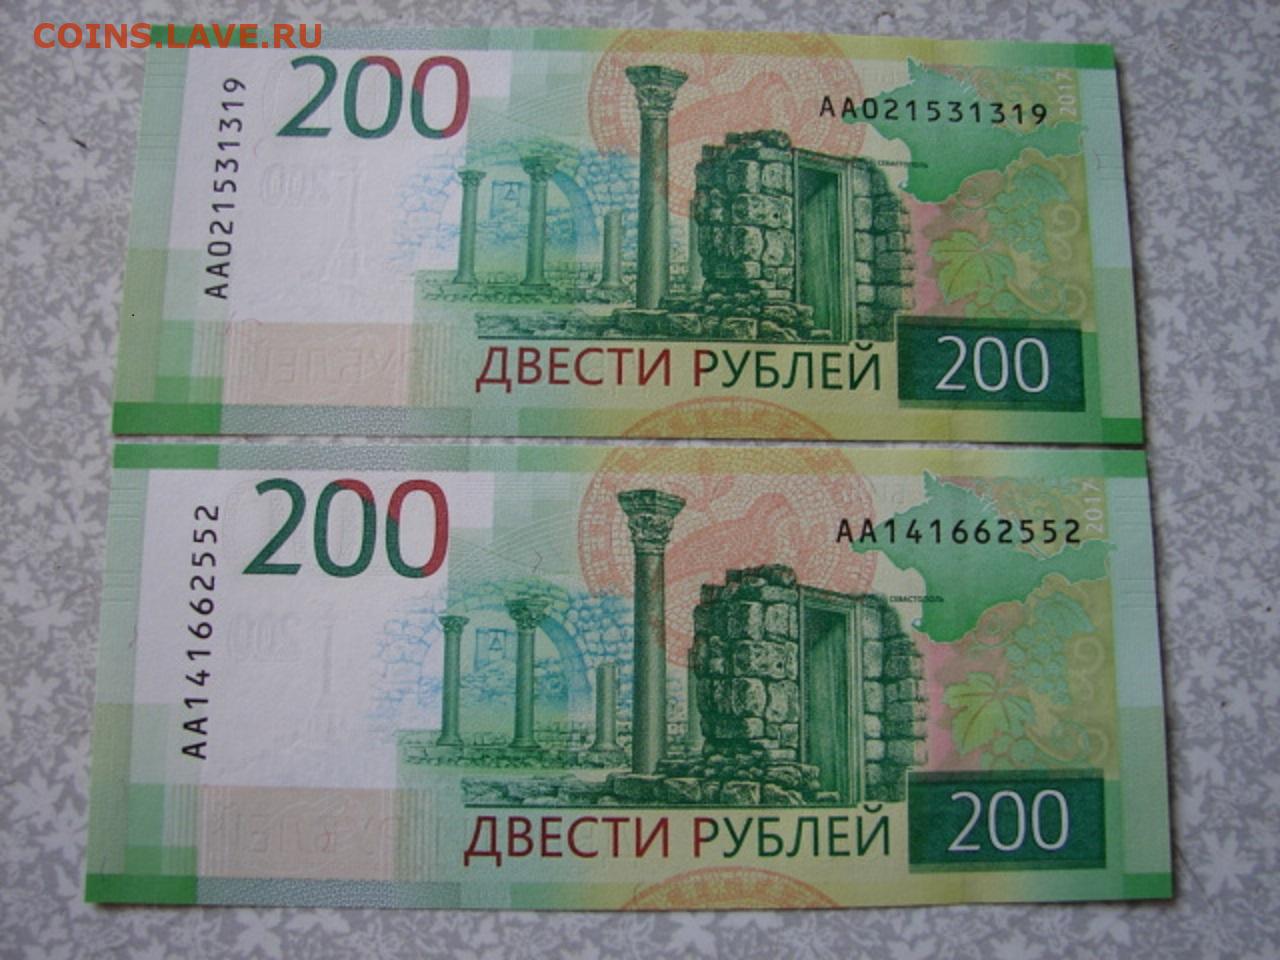 200 рублей t. Купюра 200 рублей. 200 Рублей банкнота Крым.